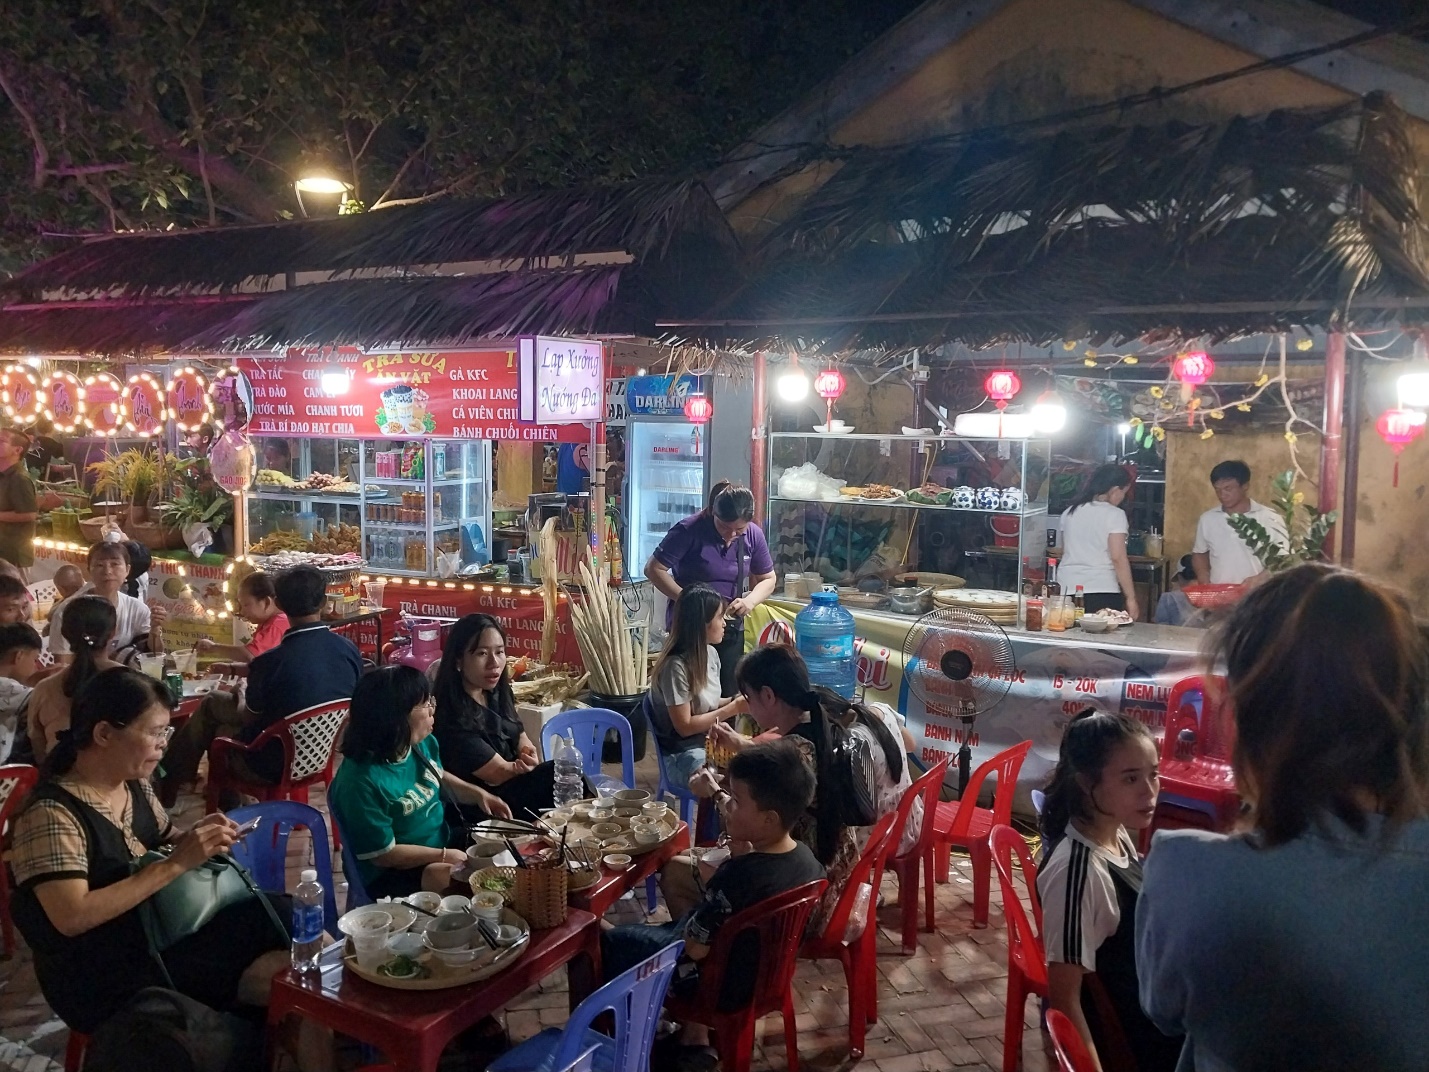 Vui nhộn ‘Chợ quê ngày hội’ bên cây cầu nổi tiếng xứ Huế - 4